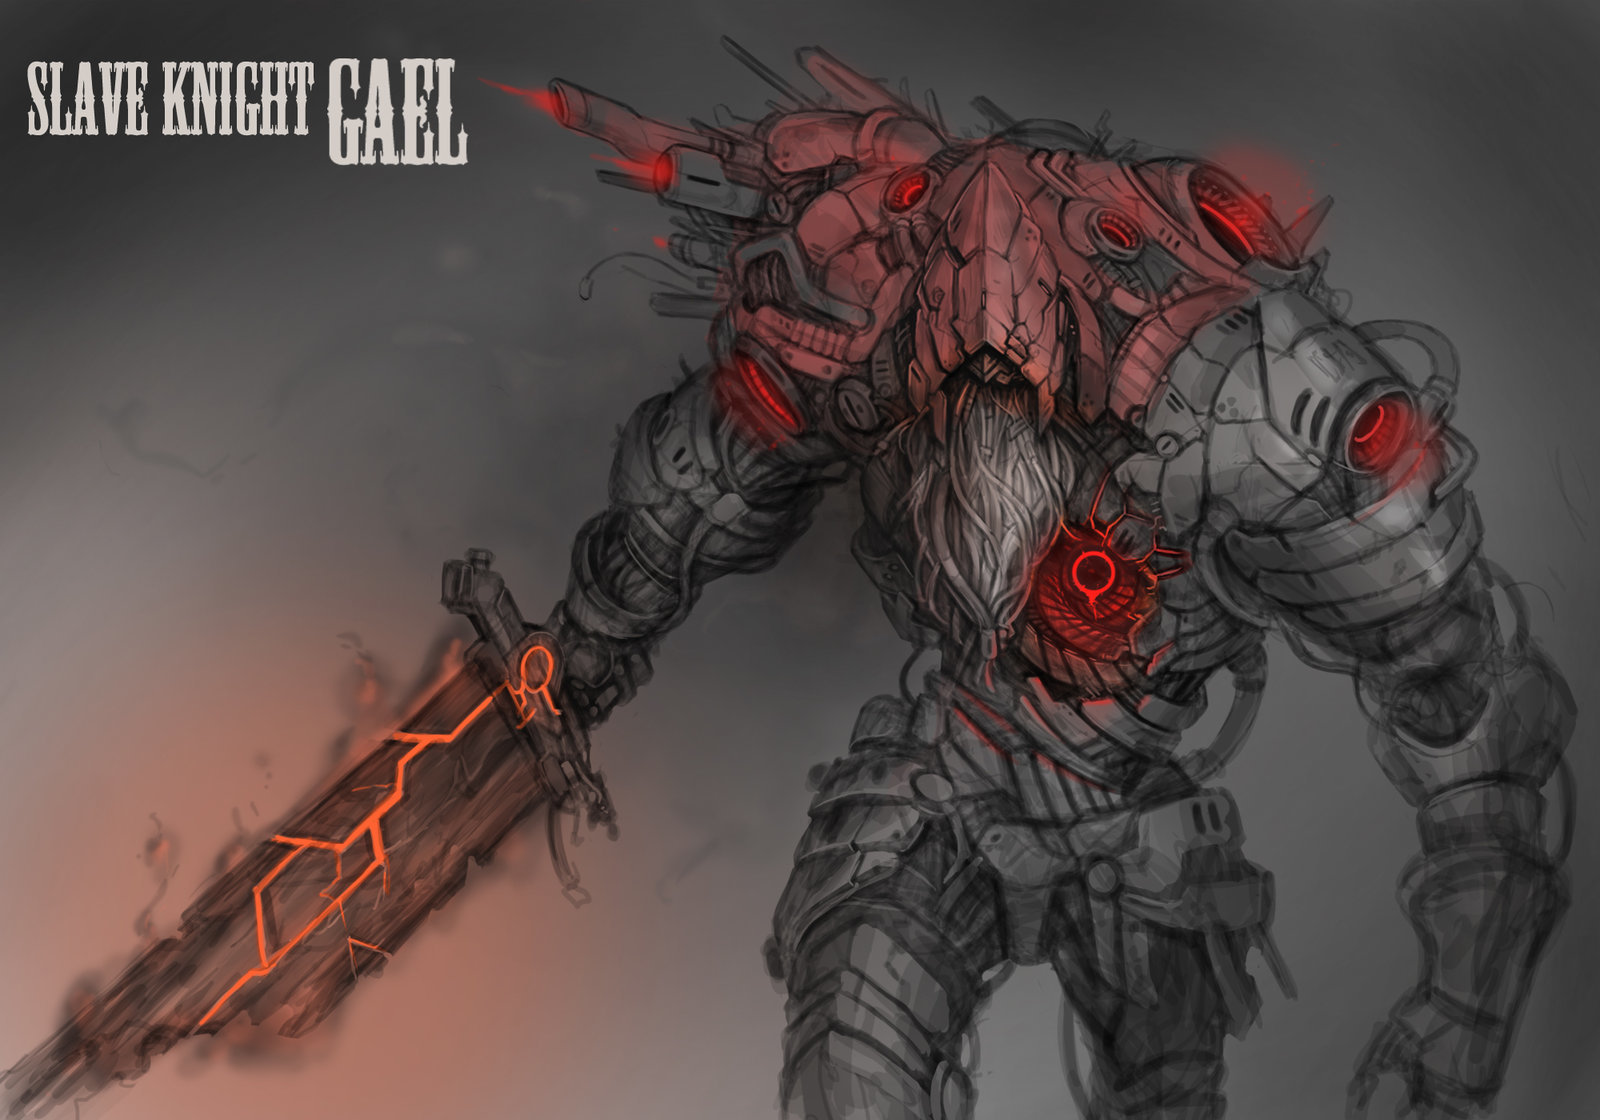 Cyberslave Knight Gael - Dark souls, Dark souls 3, Slave Knight Gael, Cyberpunk